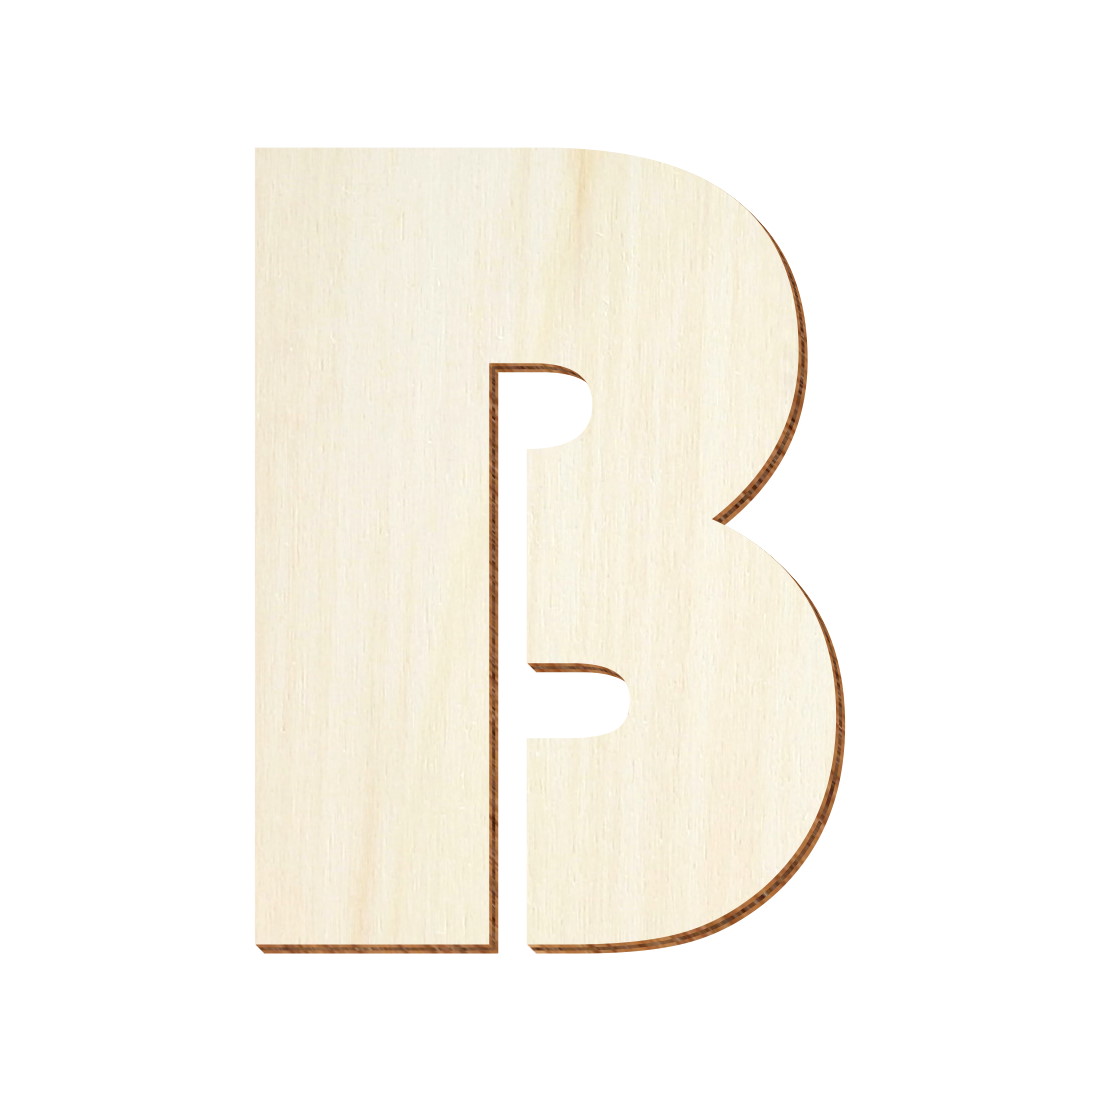 Buchstaben Bauhaus